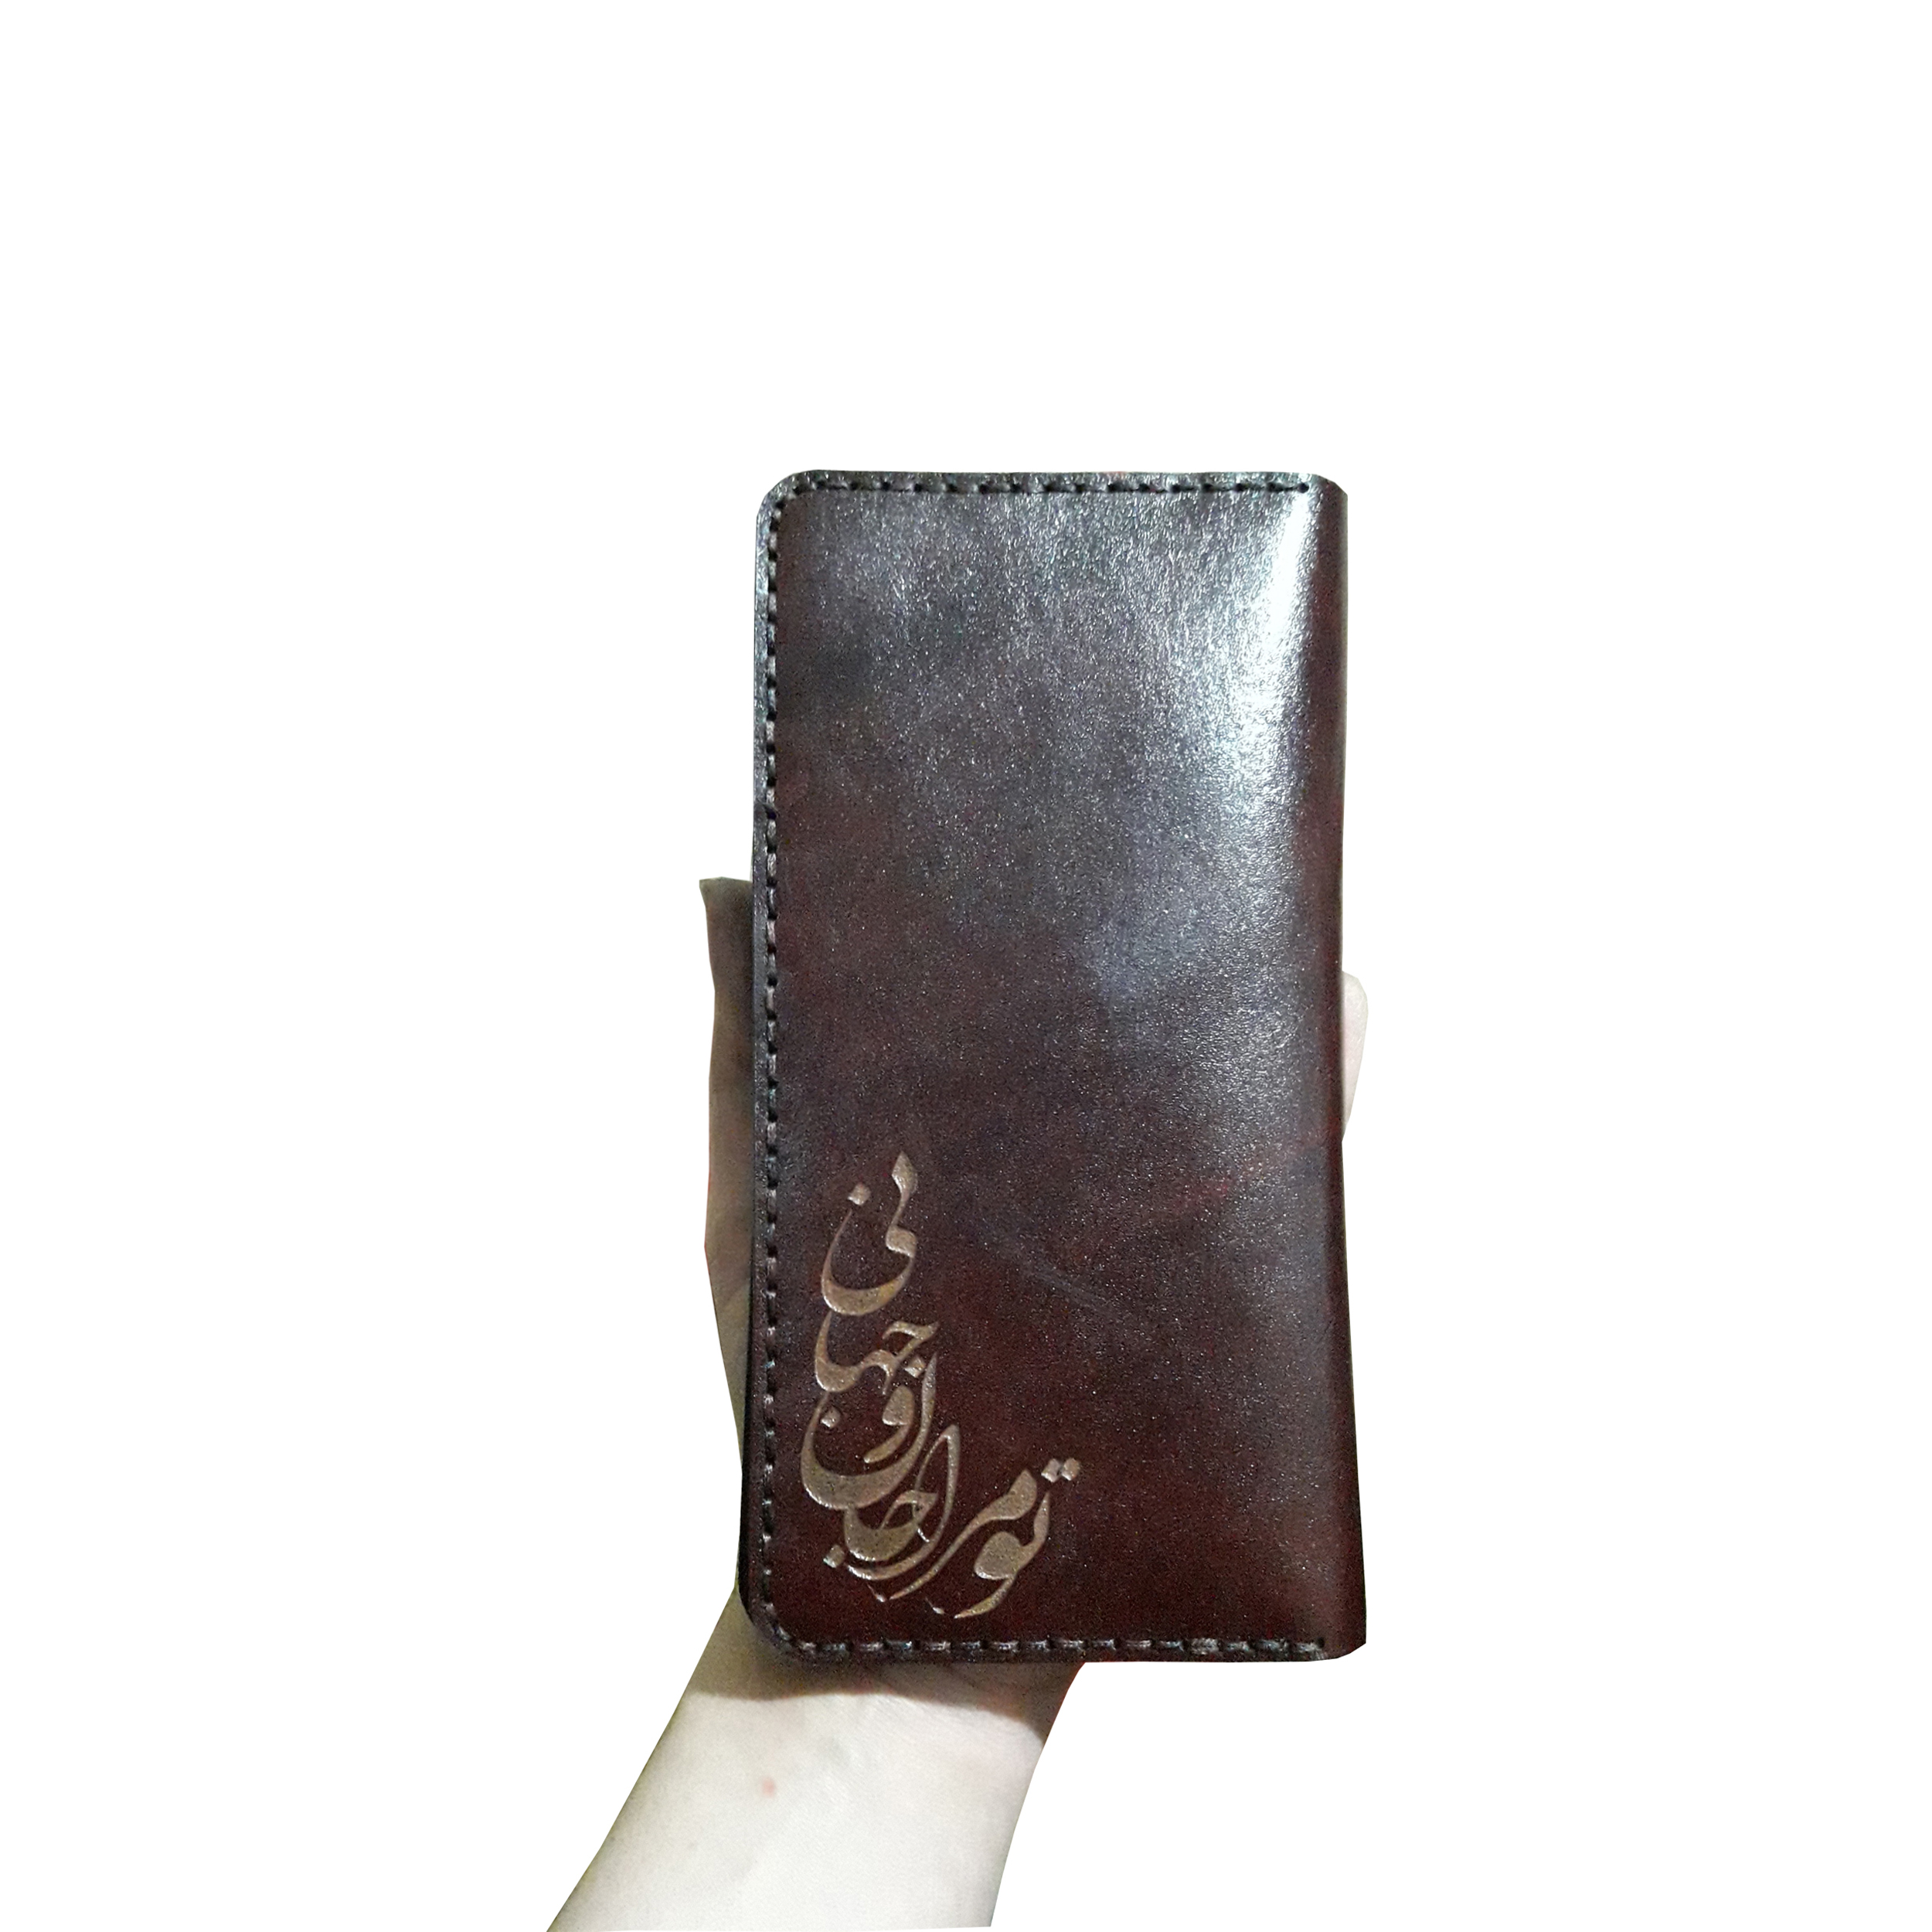 Leather wallet, Janan model, code 222